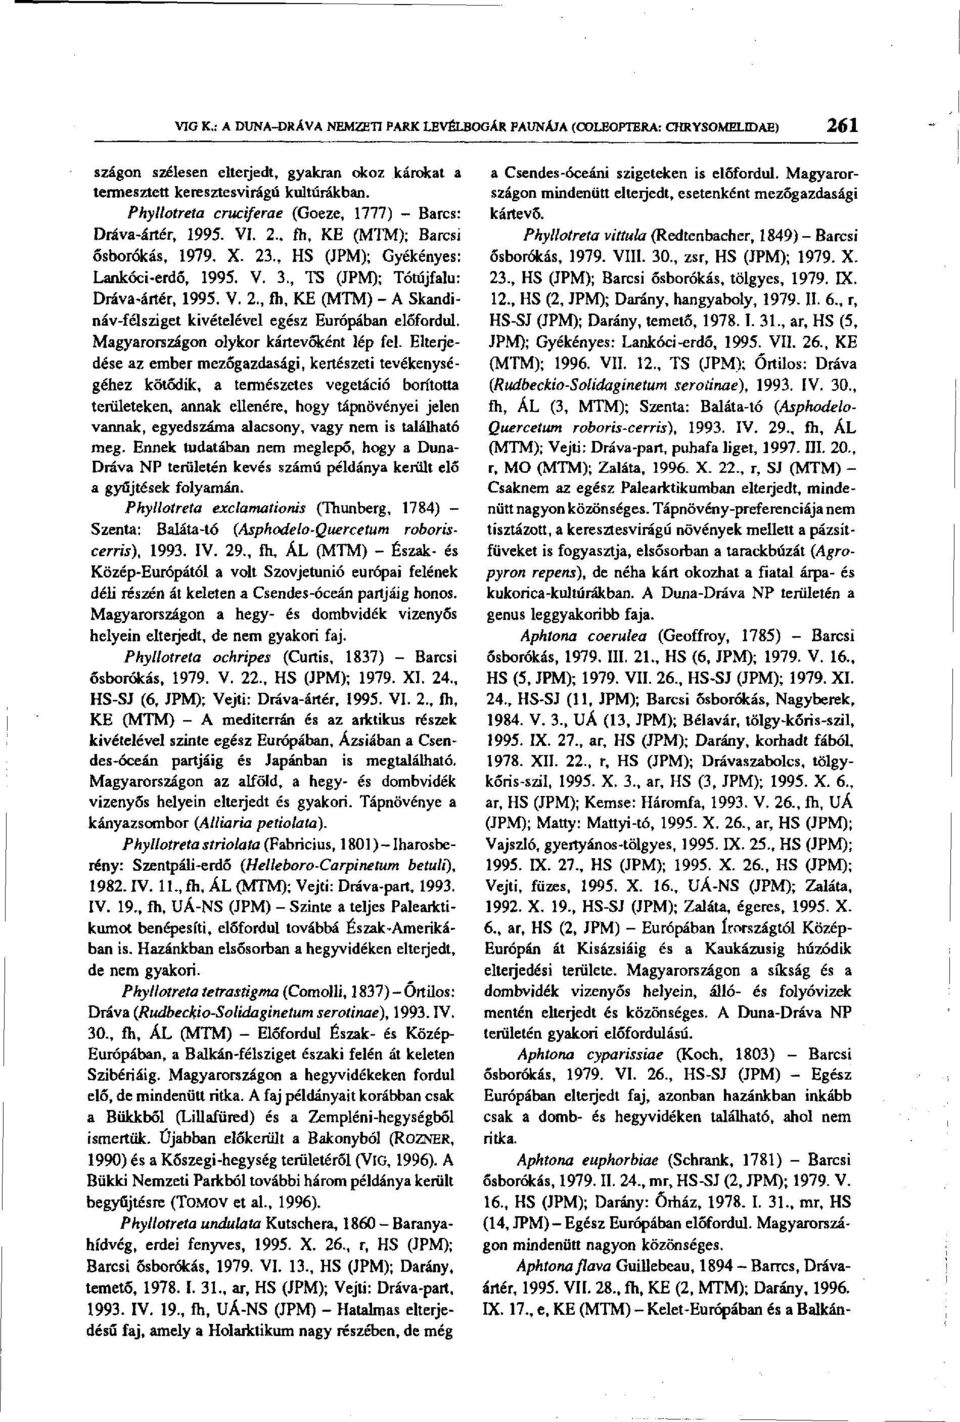 , TS (JPM); Tótújfalu: Dráva-ártér, 1995. V. 2., fh, KE (MTM) - A Skandináv-félsziget kivételével egész Európában előfordul. Magyarországon olykor kártevőként lép fel.